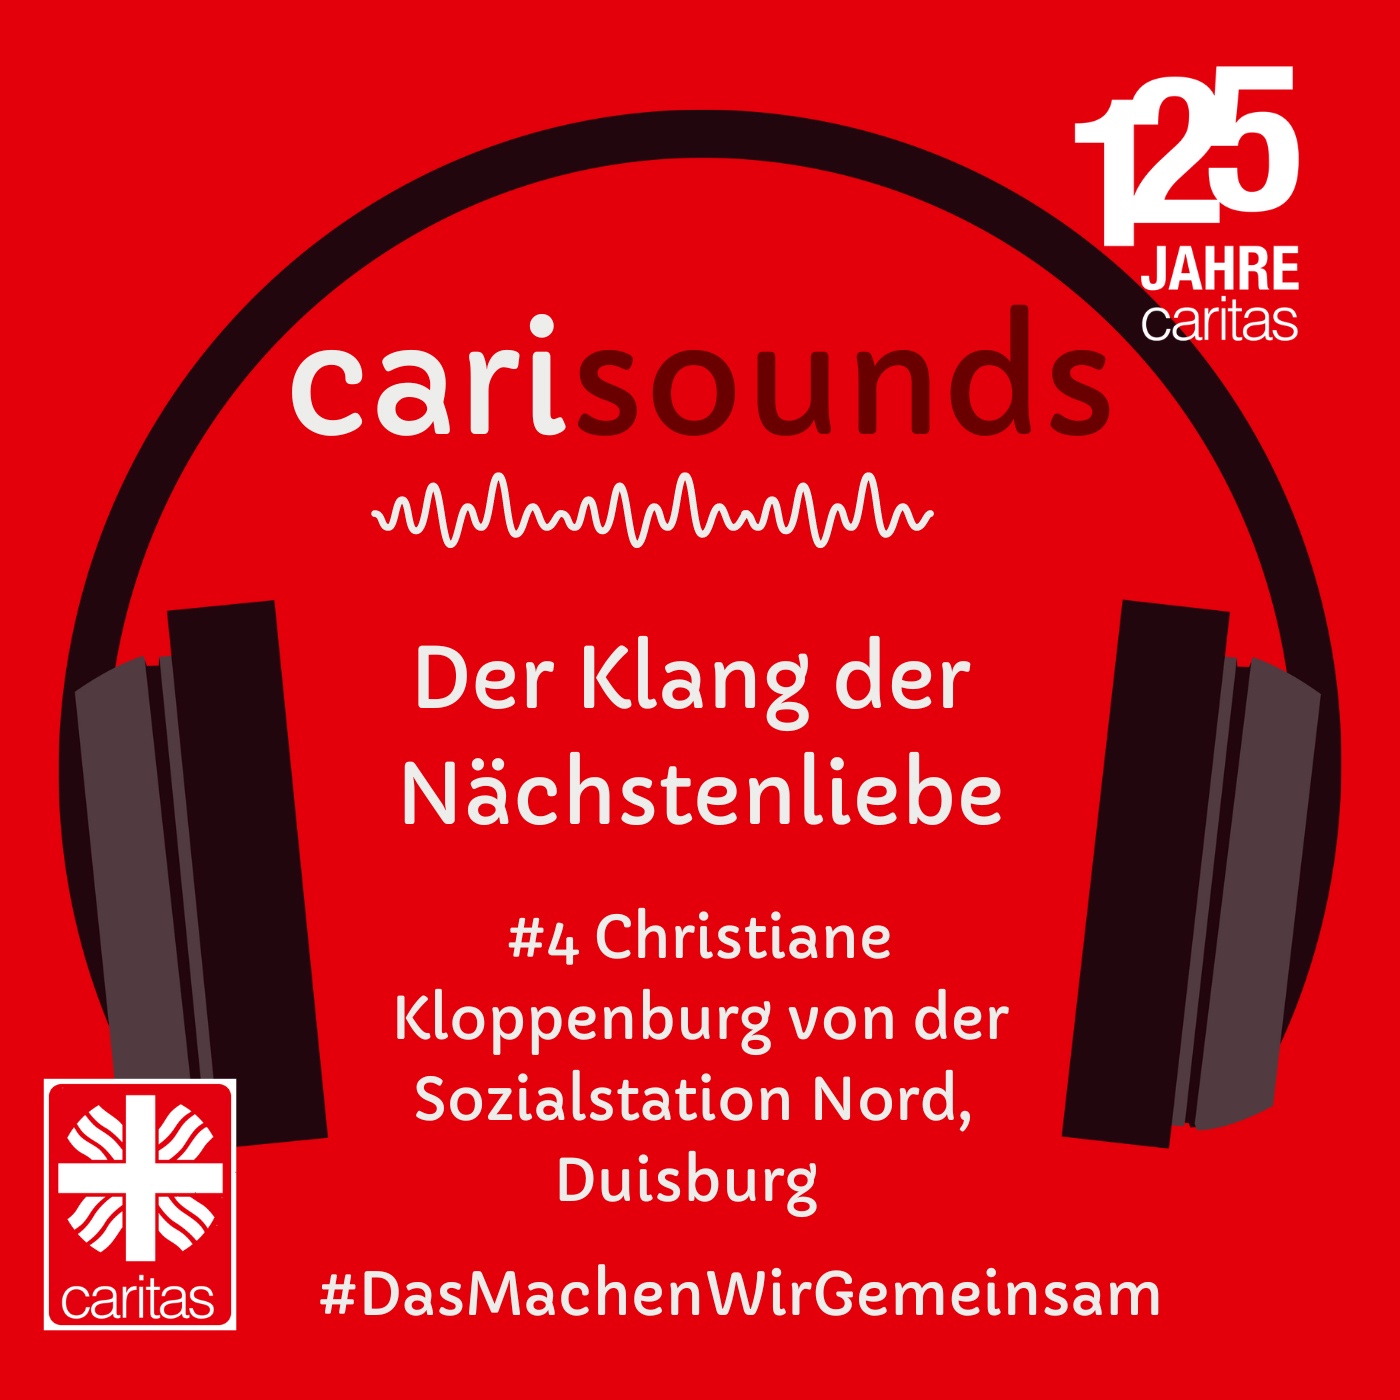 #4 carisounds - Der Klang der Nächstenliebe - Christiane Kloppenburg von der Sozialstation Nord, Duisburg